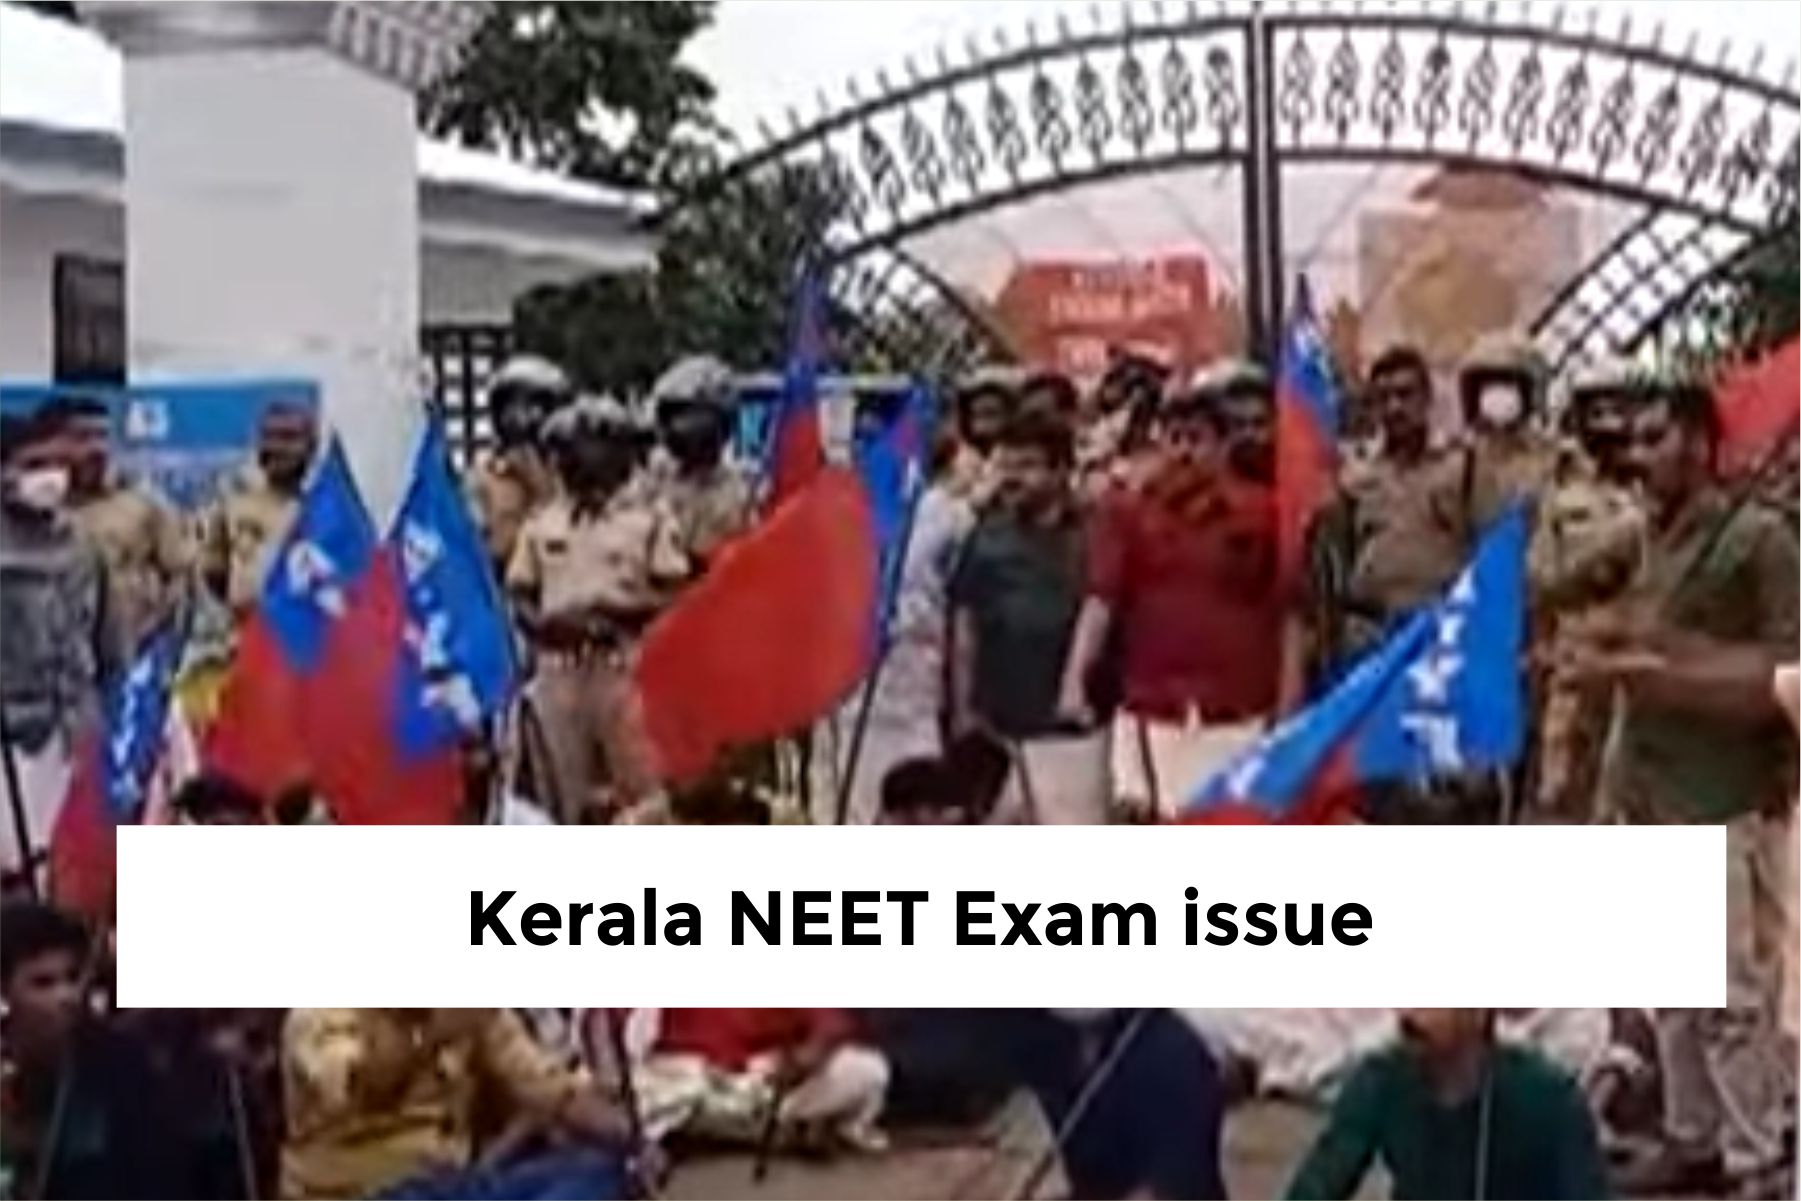 Kerala NEET Exam issue